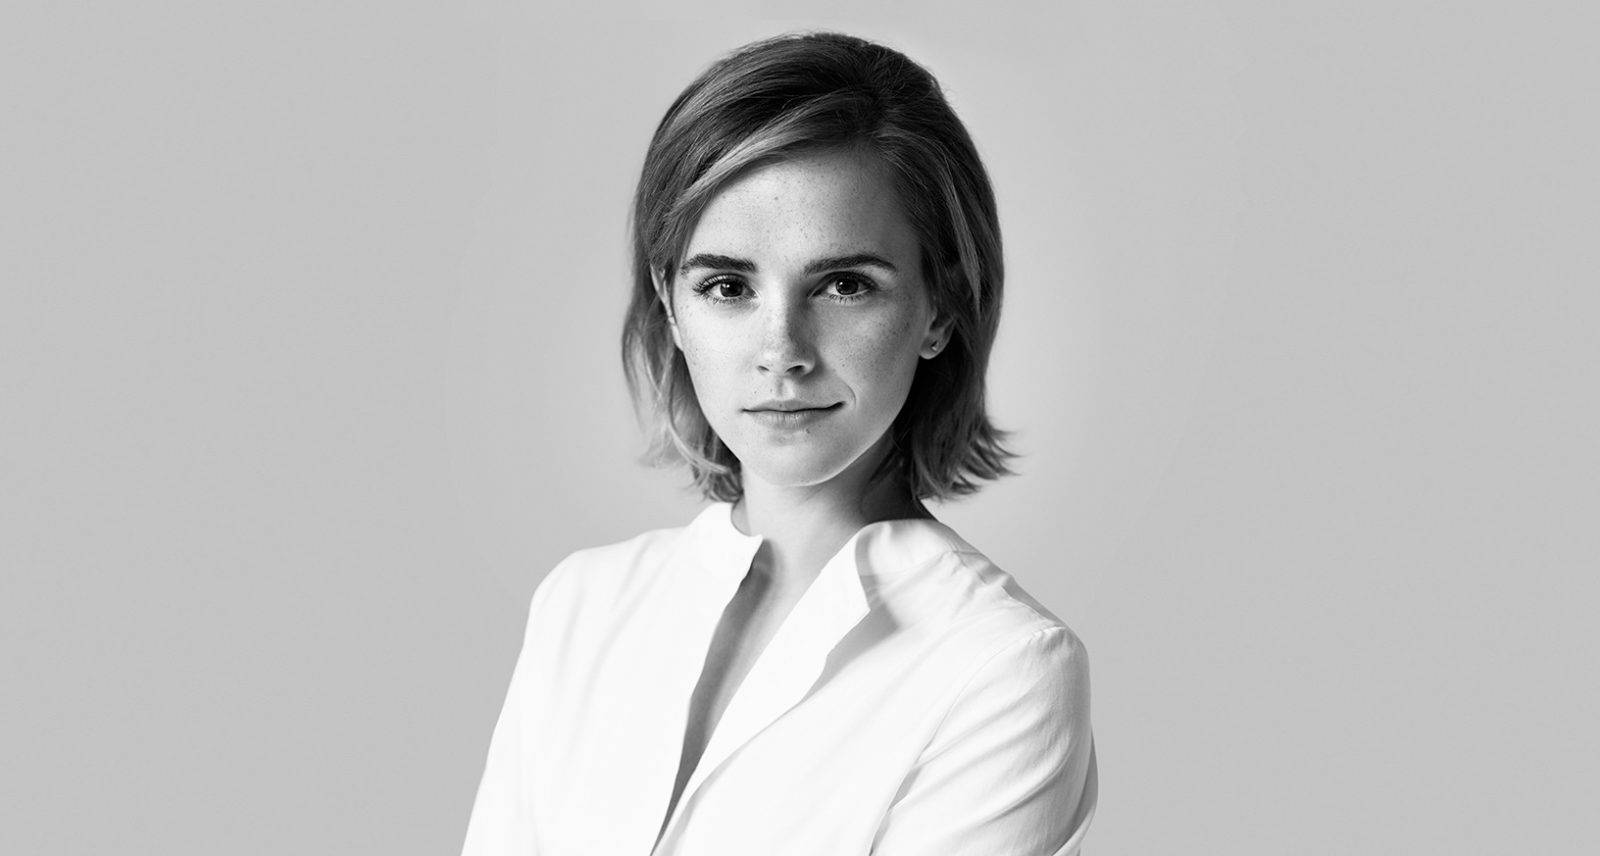 Emma Watson 被任命為 Kering Group 董事及永續委員會主席